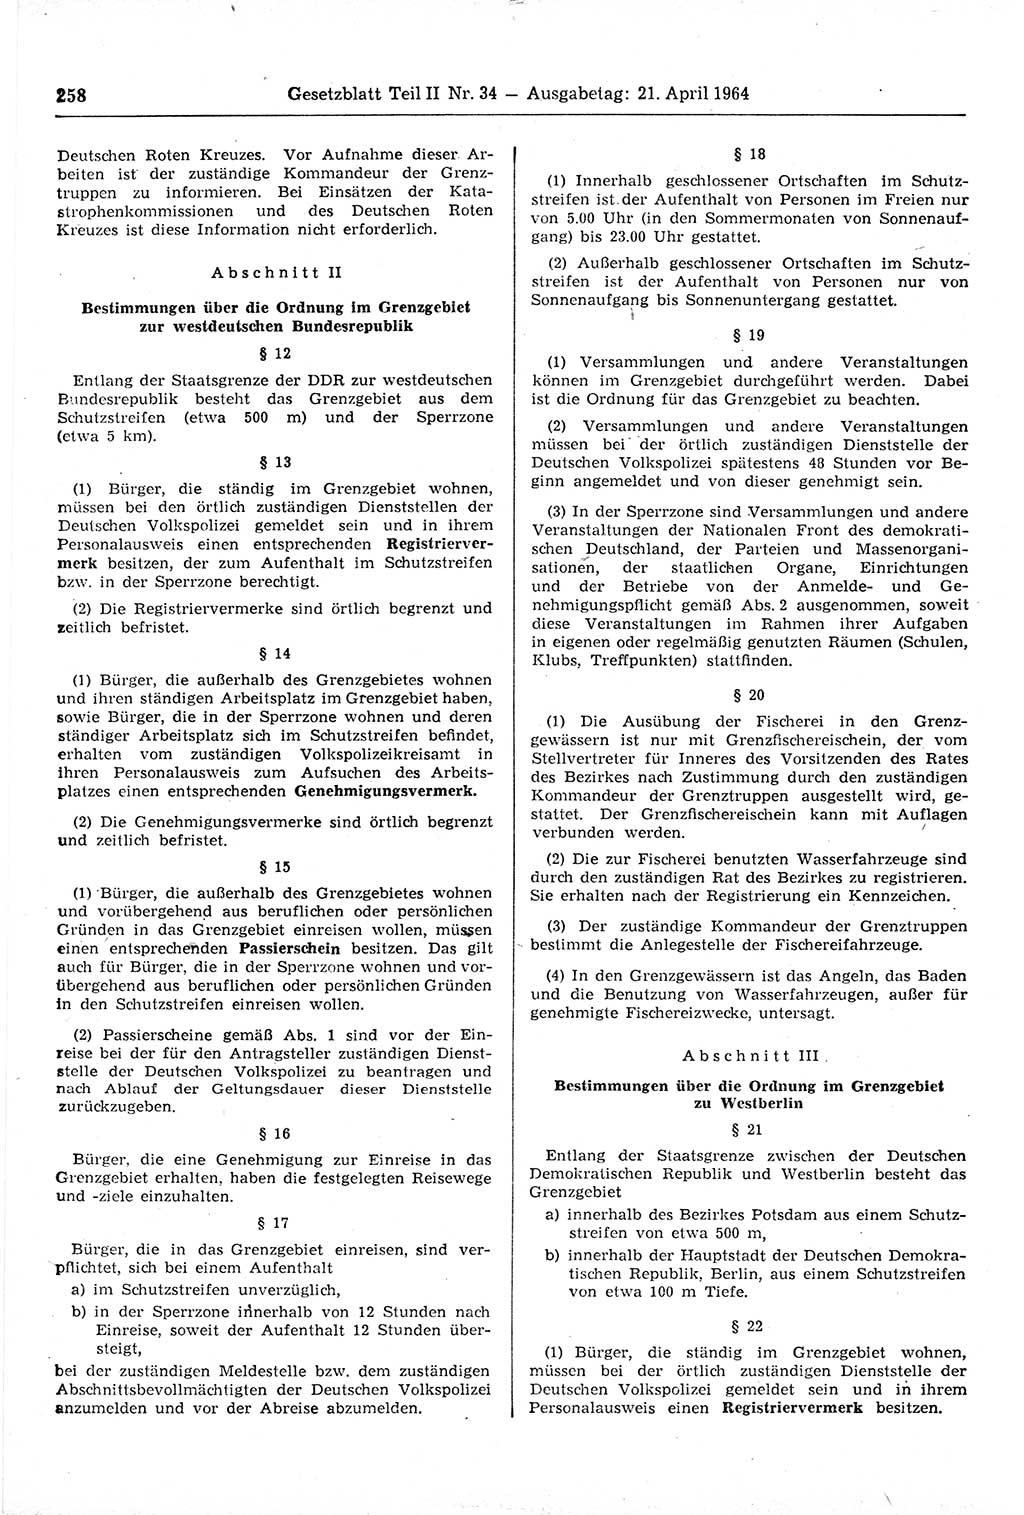 Gesetzblatt (GBl.) der Deutschen Demokratischen Republik (DDR) Teil ⅠⅠ 1964, Seite 258 (GBl. DDR ⅠⅠ 1964, S. 258)